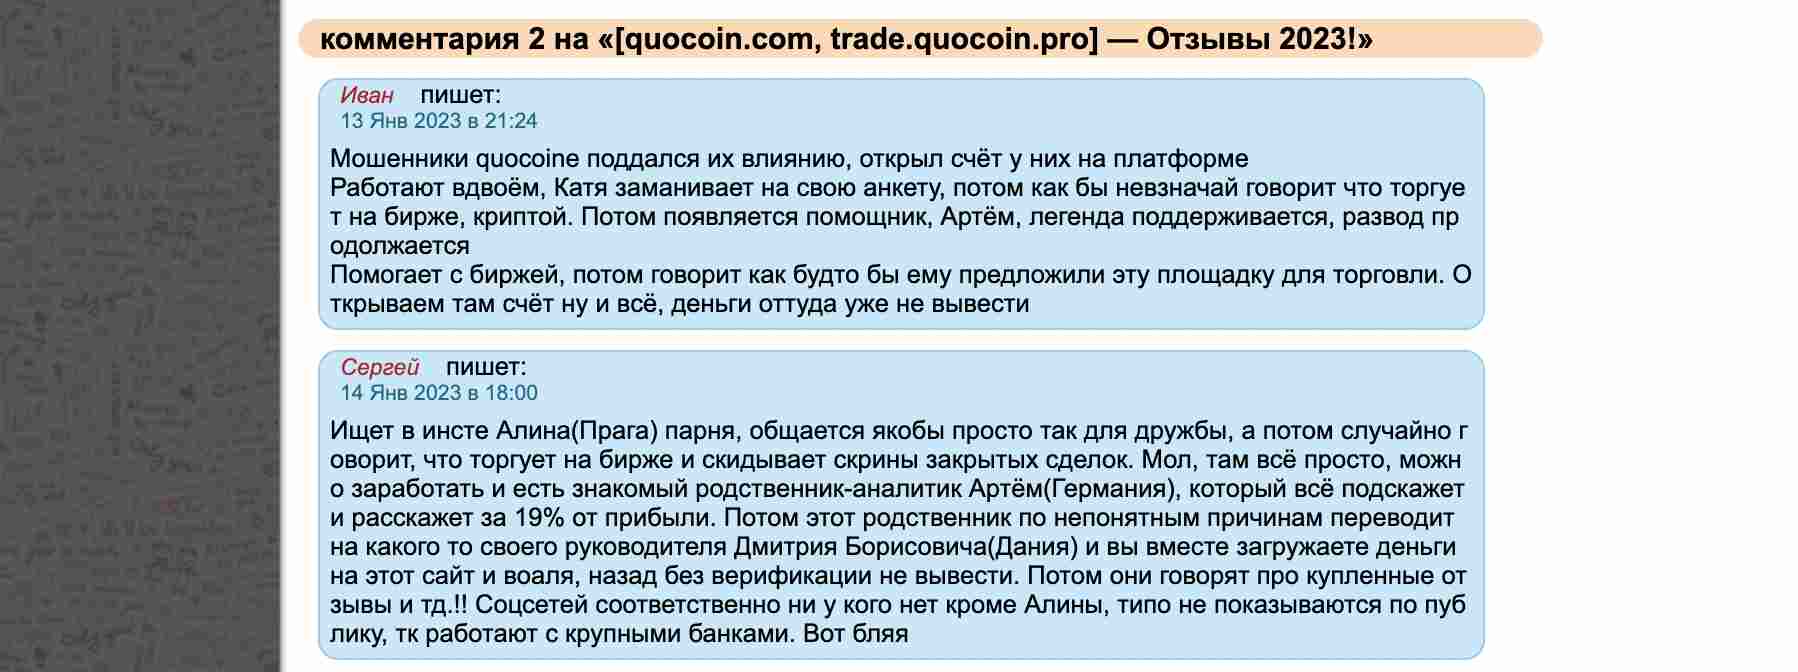 Quocoin — шаблонный псевдоброкер, крадущий деньги